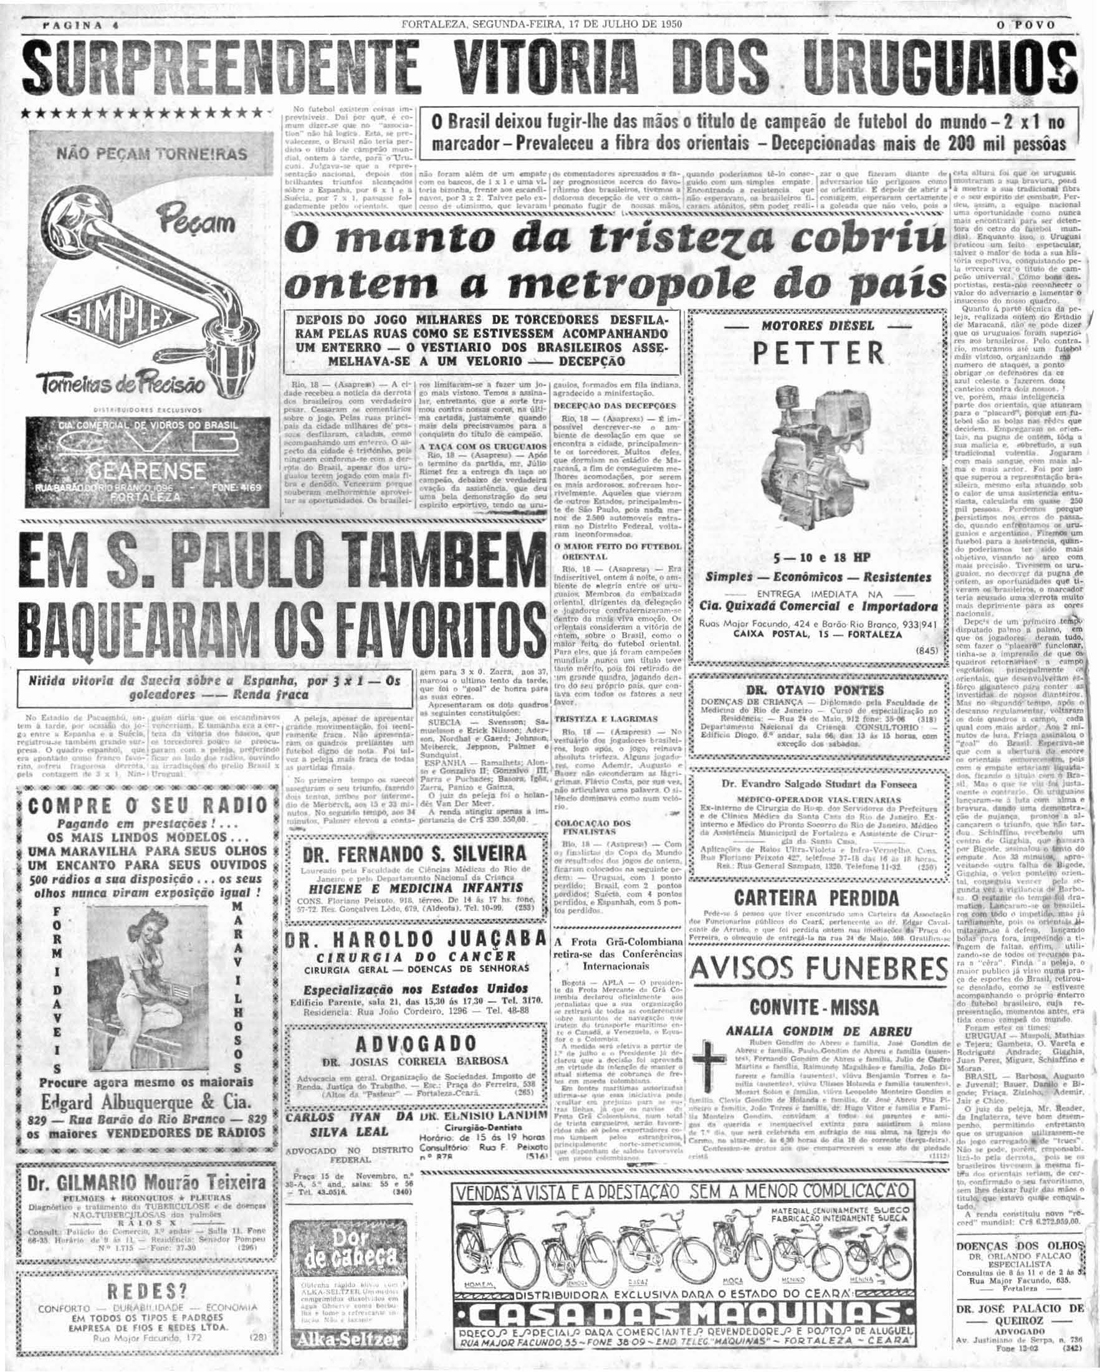 Copa 1950 A CLASSIFICAÇÃO DO BRASIL 